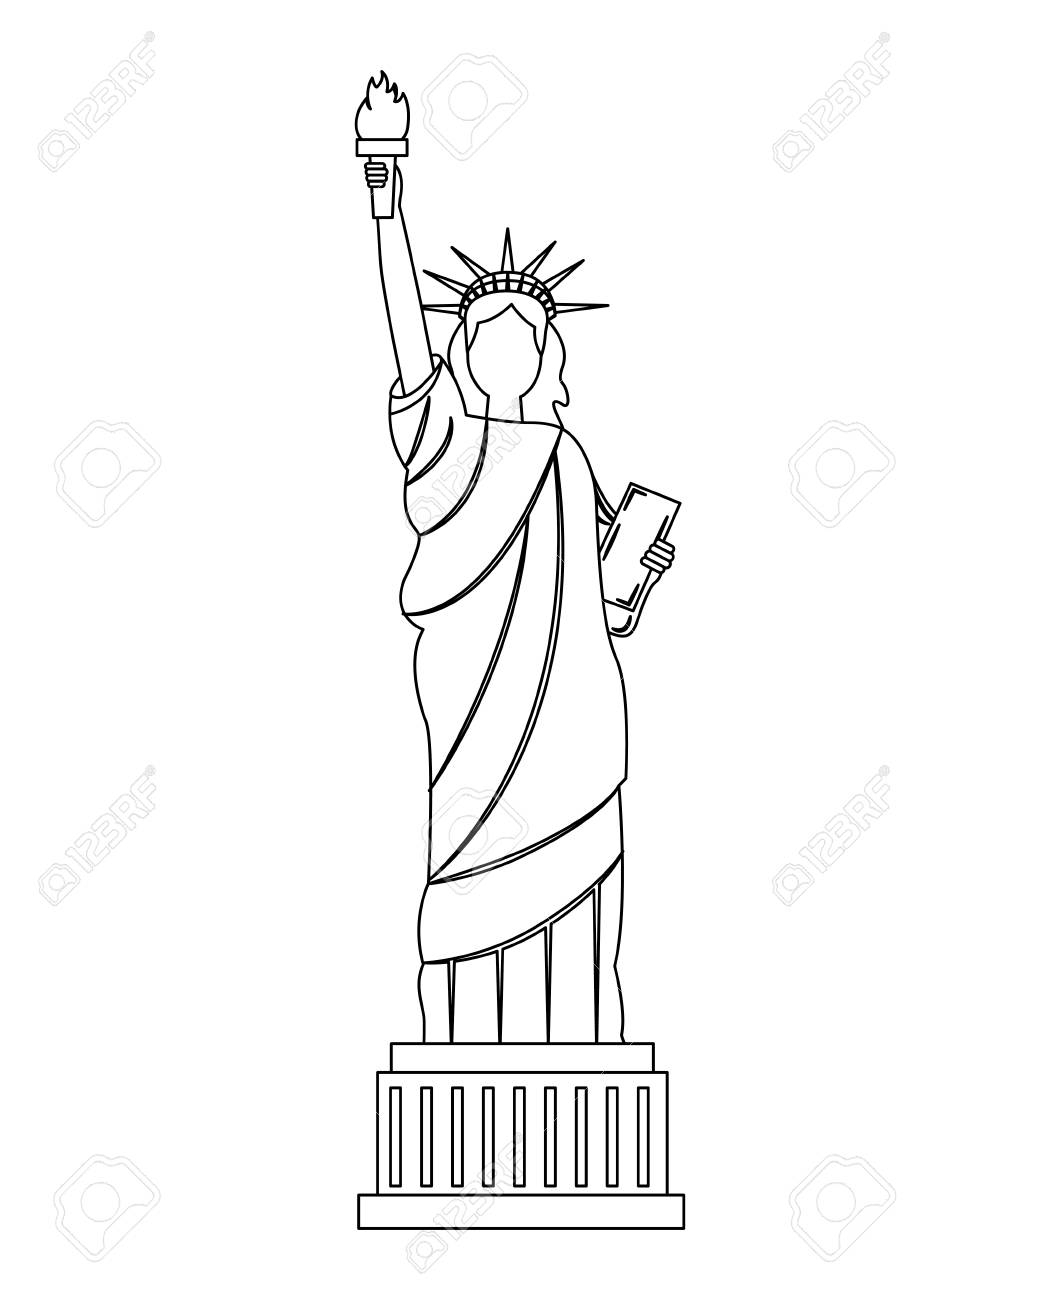 Статуя свободы рисунок карандашом - 61 фото